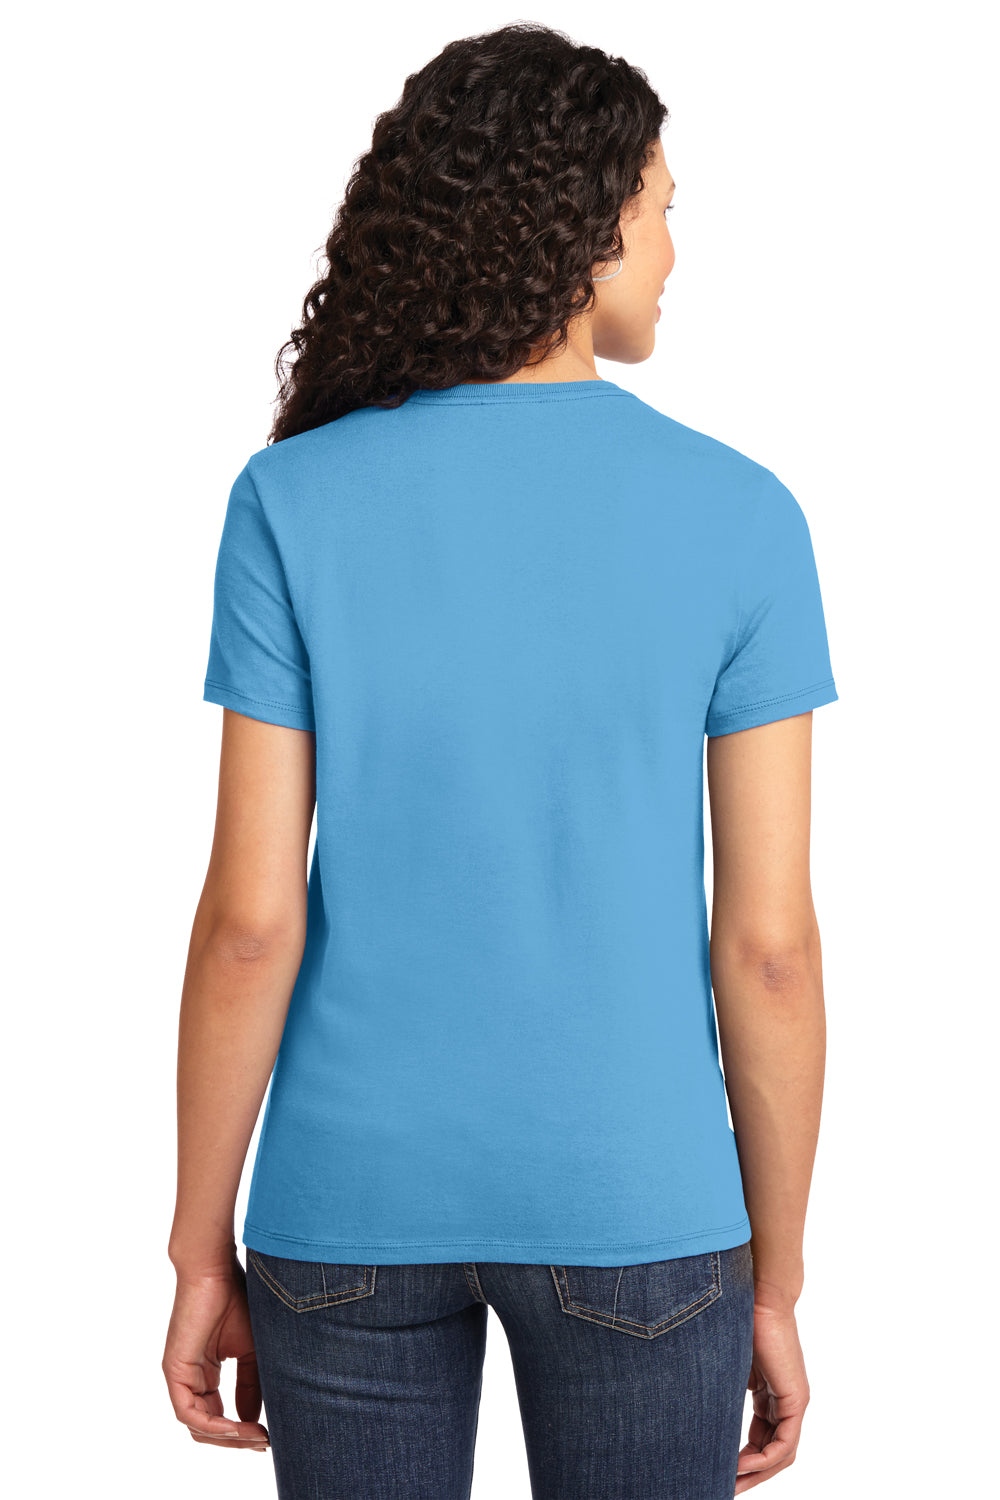 Port & Company LPC61 Womens Essential Short Sleeve Crewneck T-Shirt Aqua Blue Back